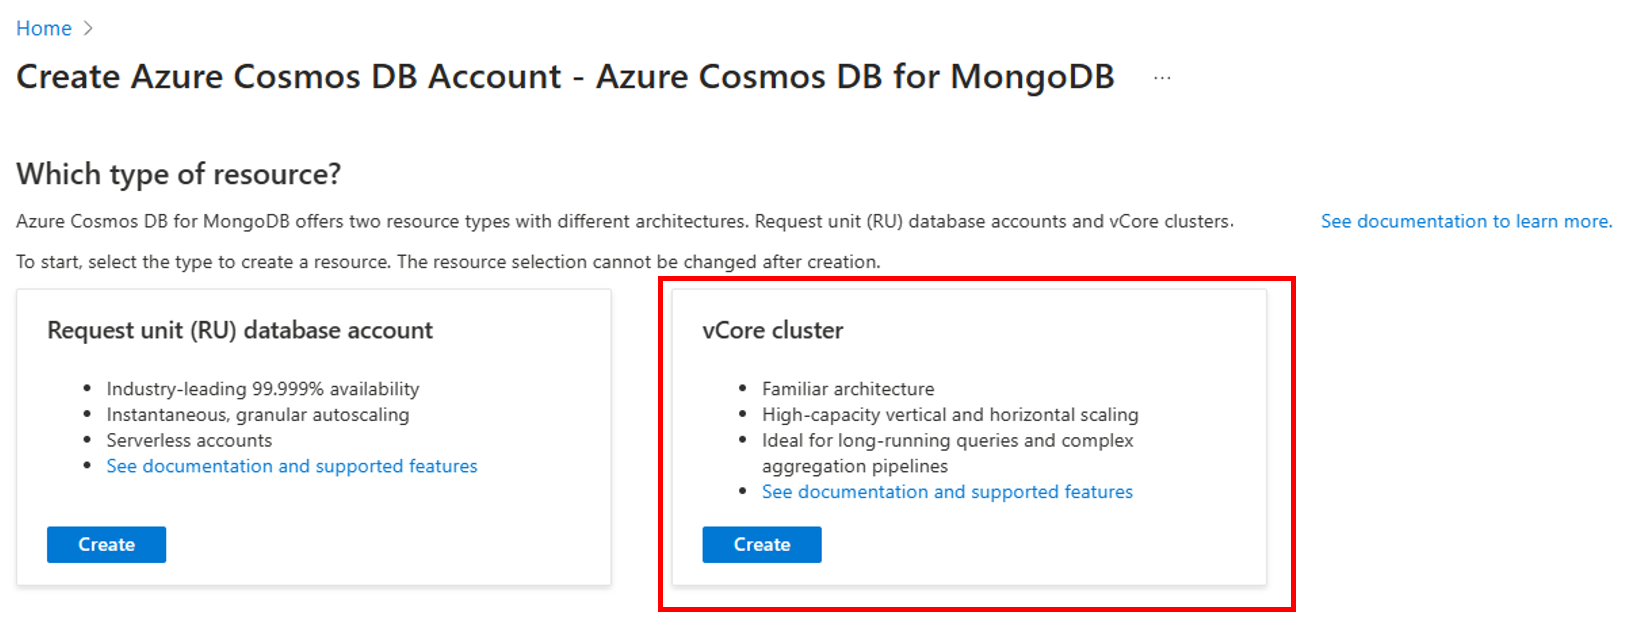 Снимок экрана: страница выбора типа ресурса для Azure Cosmos DB для MongoDB.